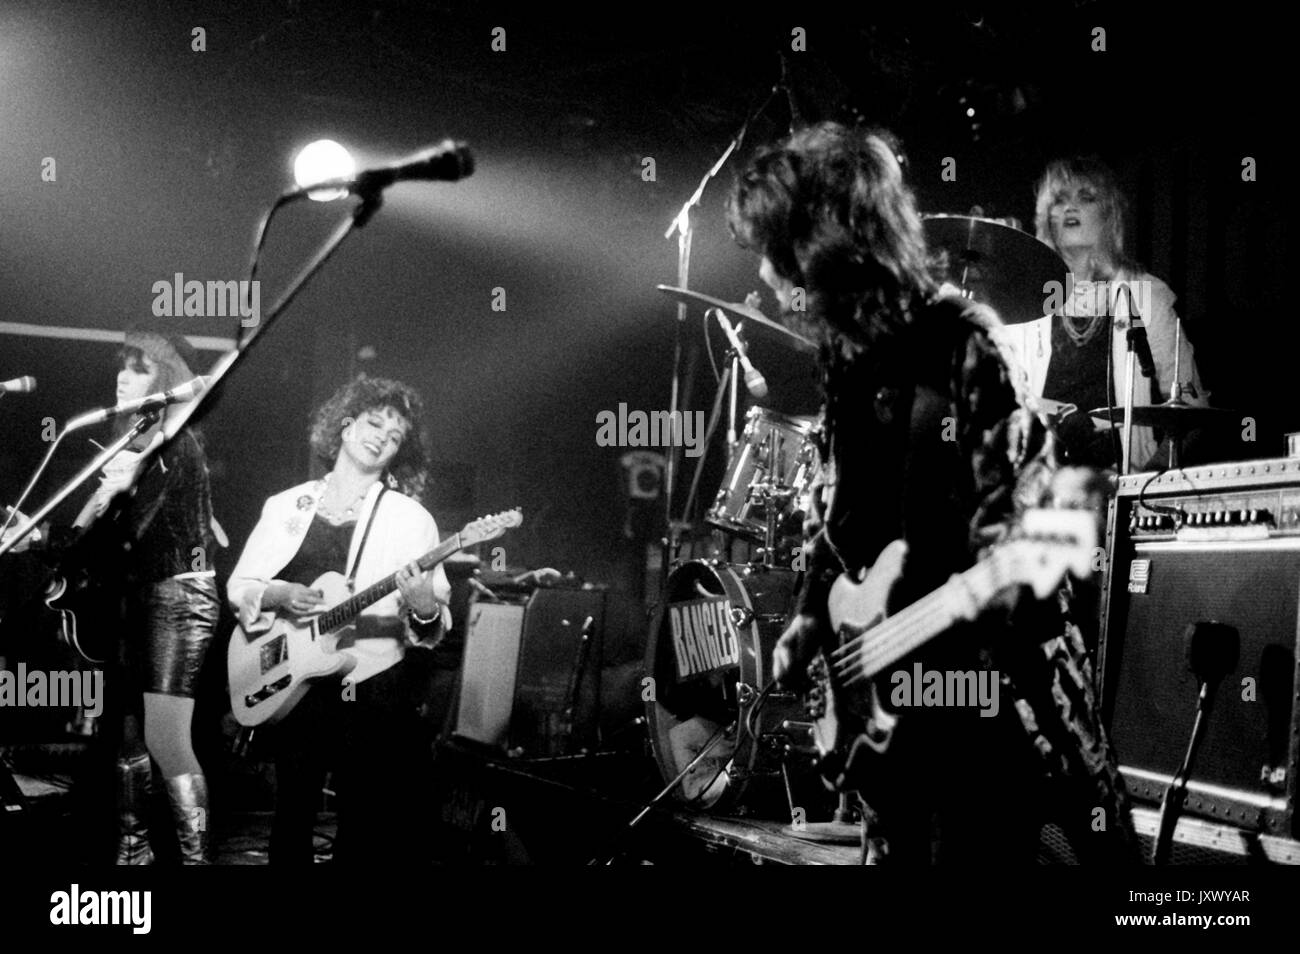 Vicki Peterson, Susanna Hoffs, Michael Steele et Debbi Peterson de The Bangles en concert sur la scène du Marquee Club le 2 février 1985 à Londres, en Angleterre. Banque D'Images